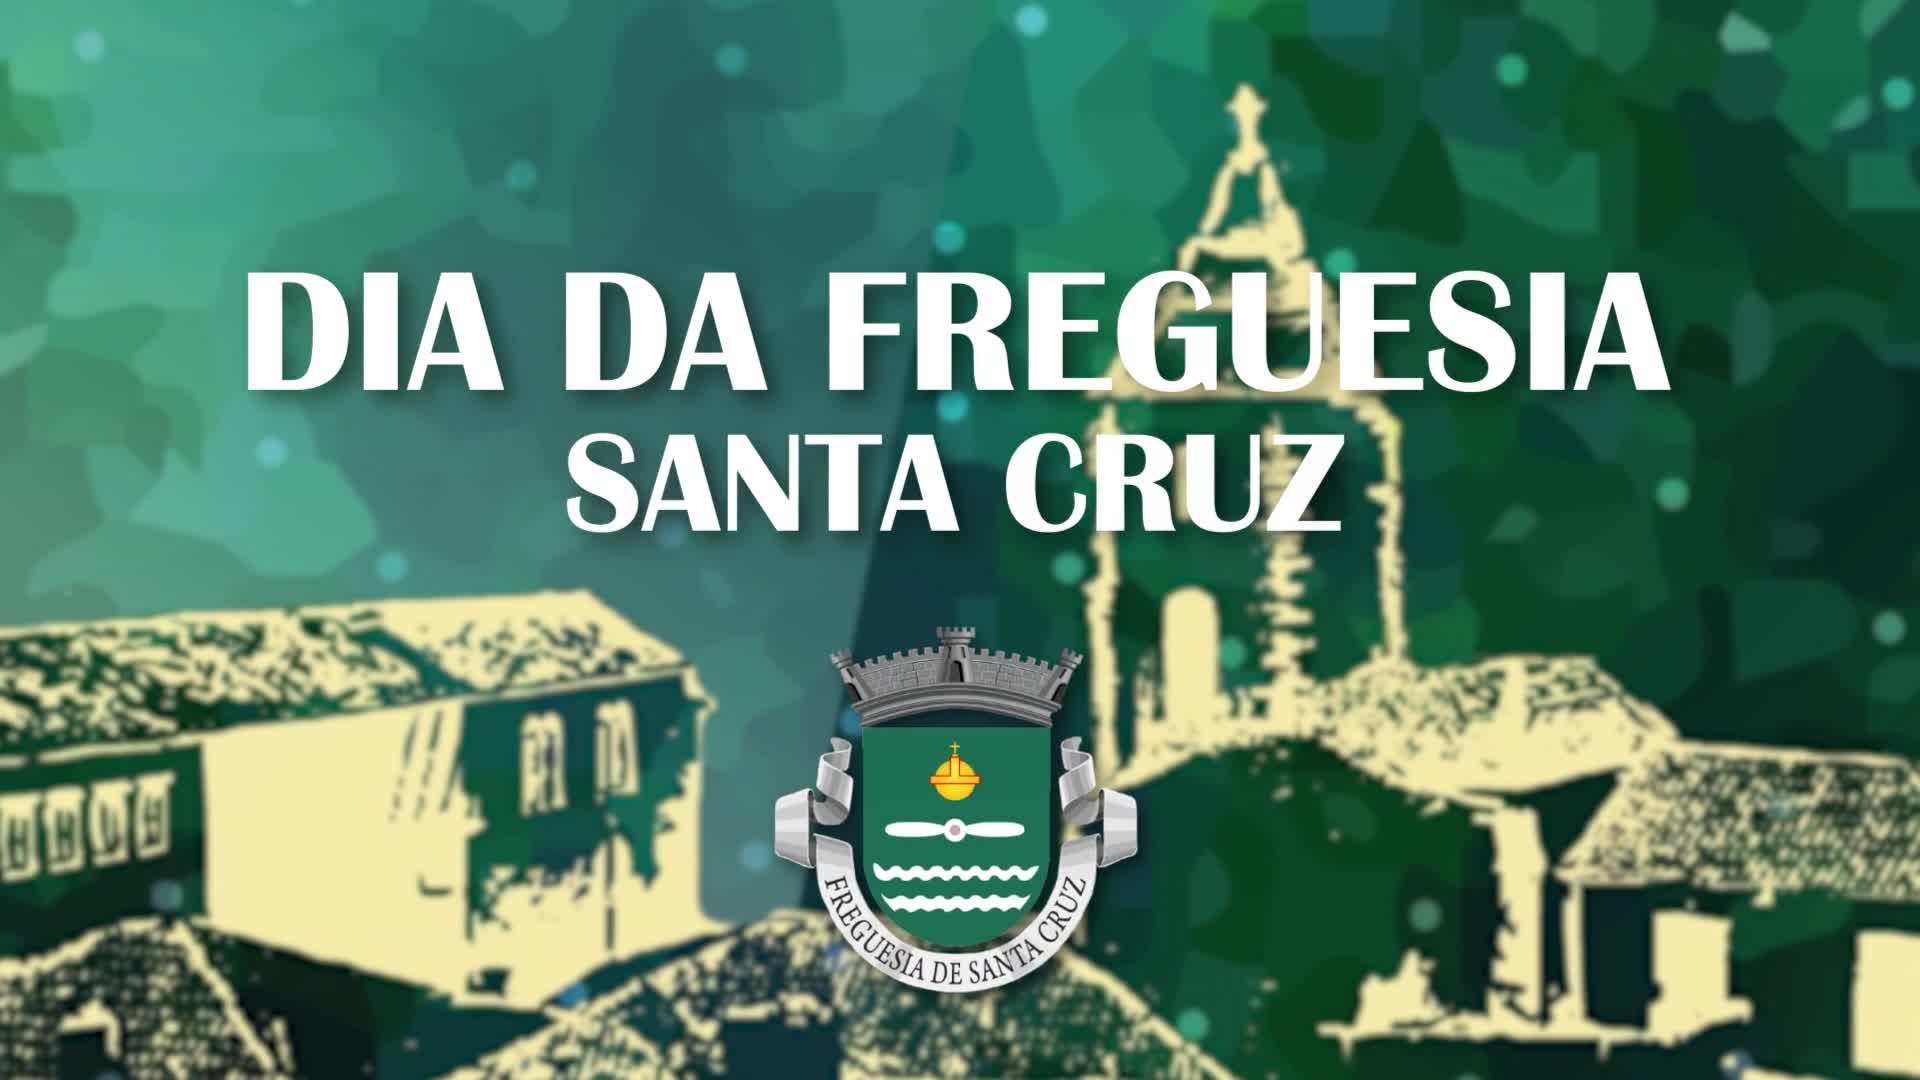 PROMO - Dia da Freguesia Santa Cruz 